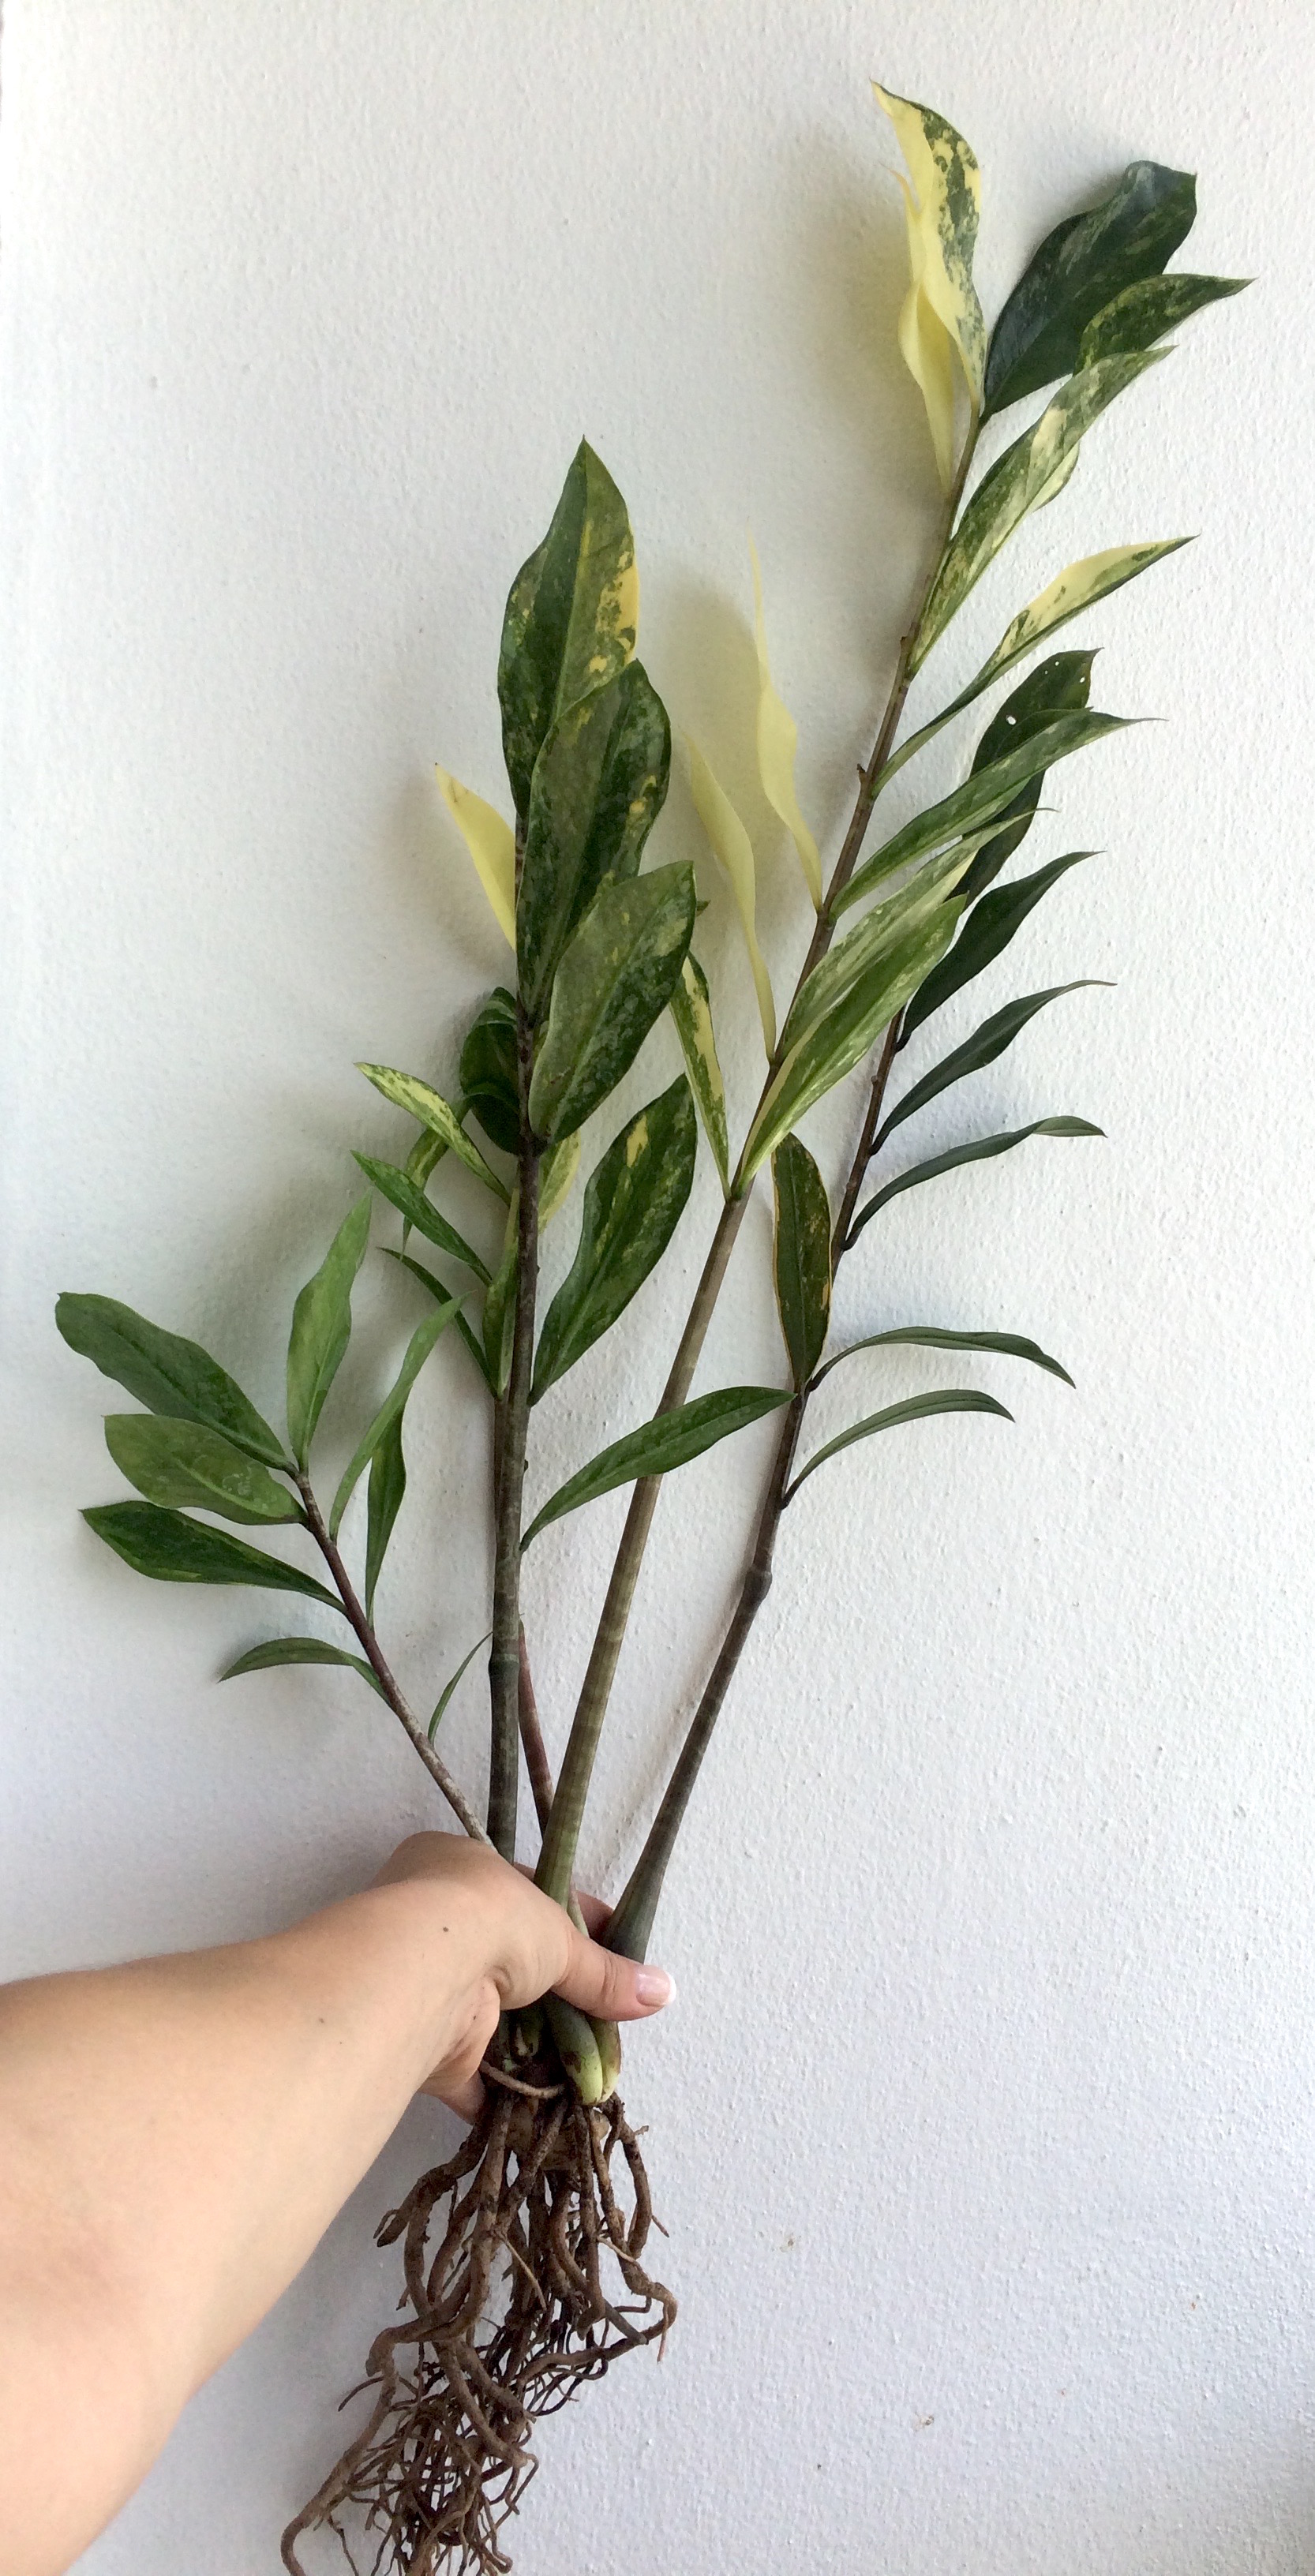 Zamioculcas zamiifolia white variegated (long leaf) / Замиокулькас замиелистный, белая вариегатность, длиннолистная форма  20-30-45-60